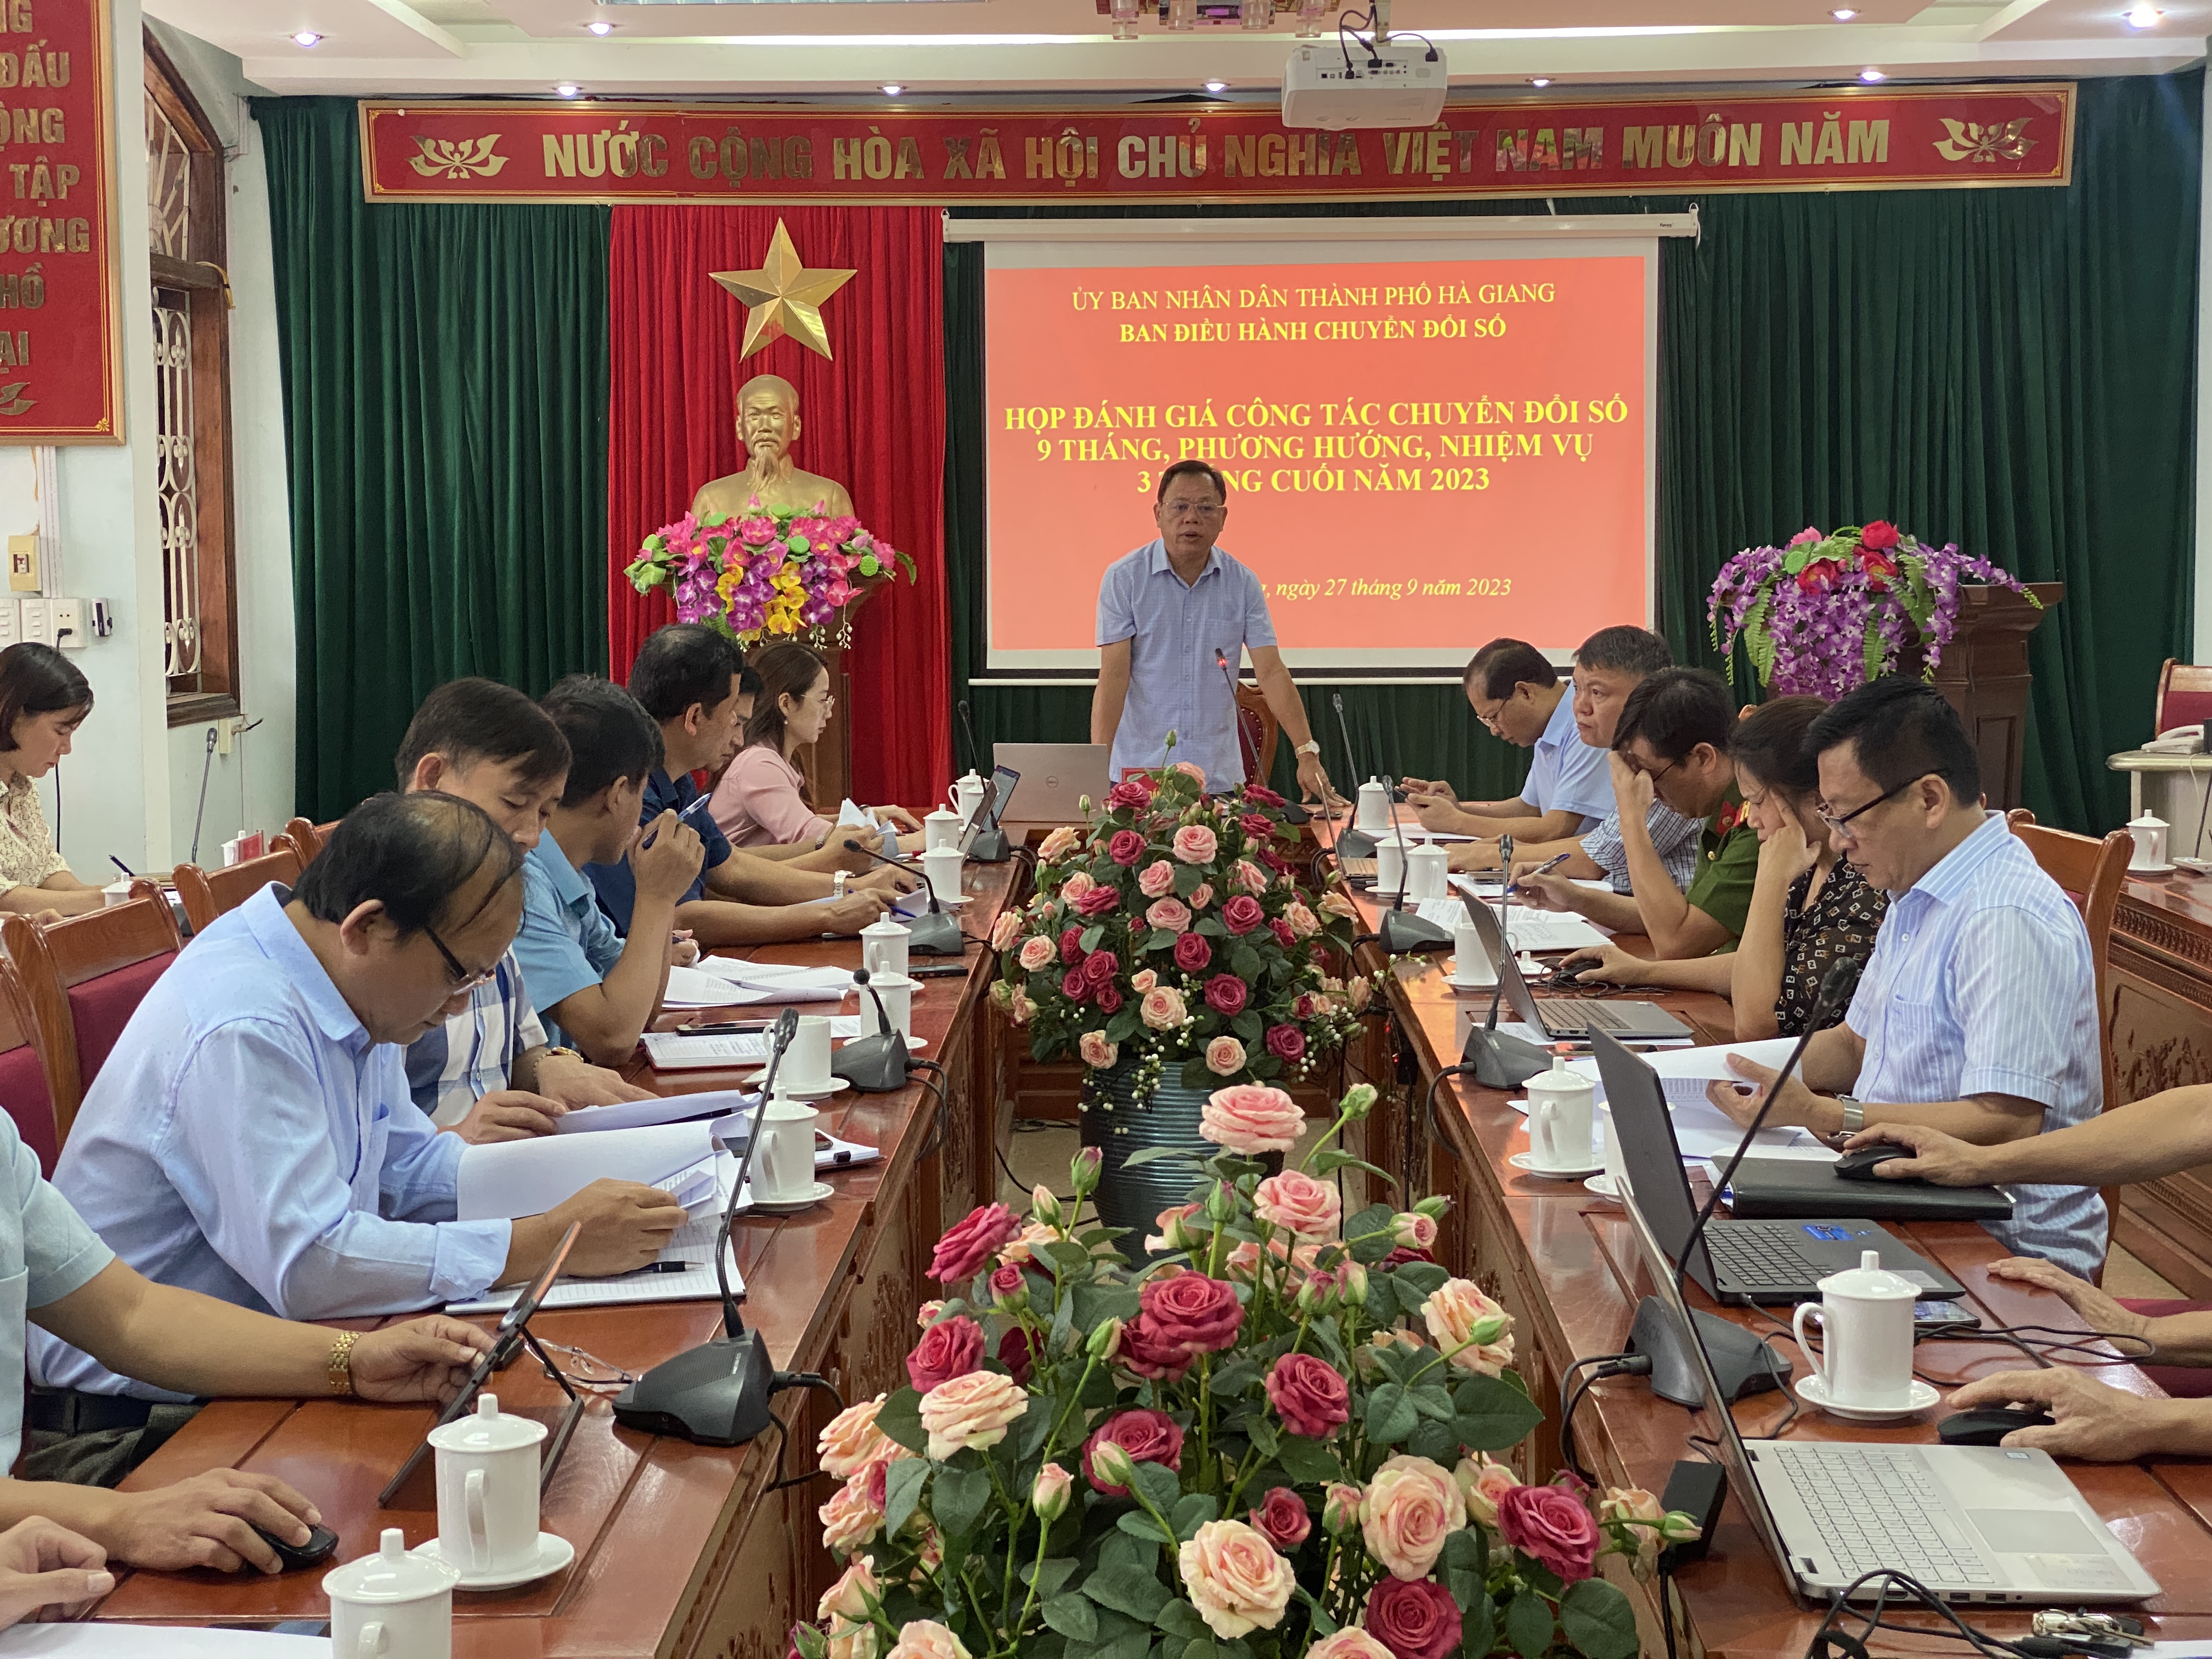 Thành phố Hà Giang họp đánh giá công tác chuyển đổi số 9 tháng đầu năm